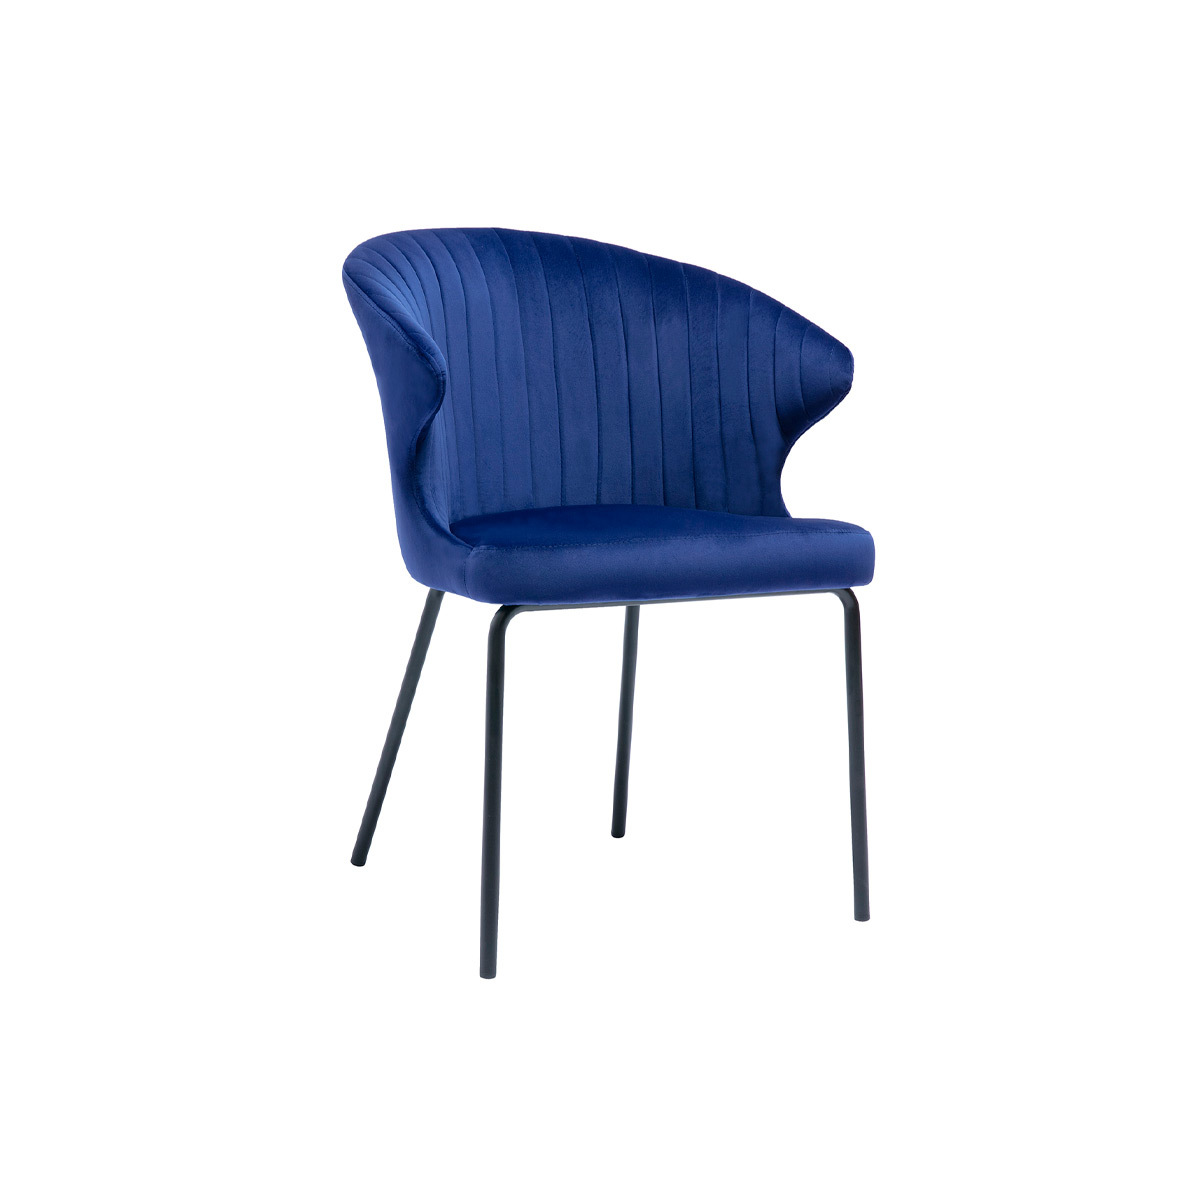 Chaise design en tissu velours bleu foncé et métal noir REQUIEM vue1